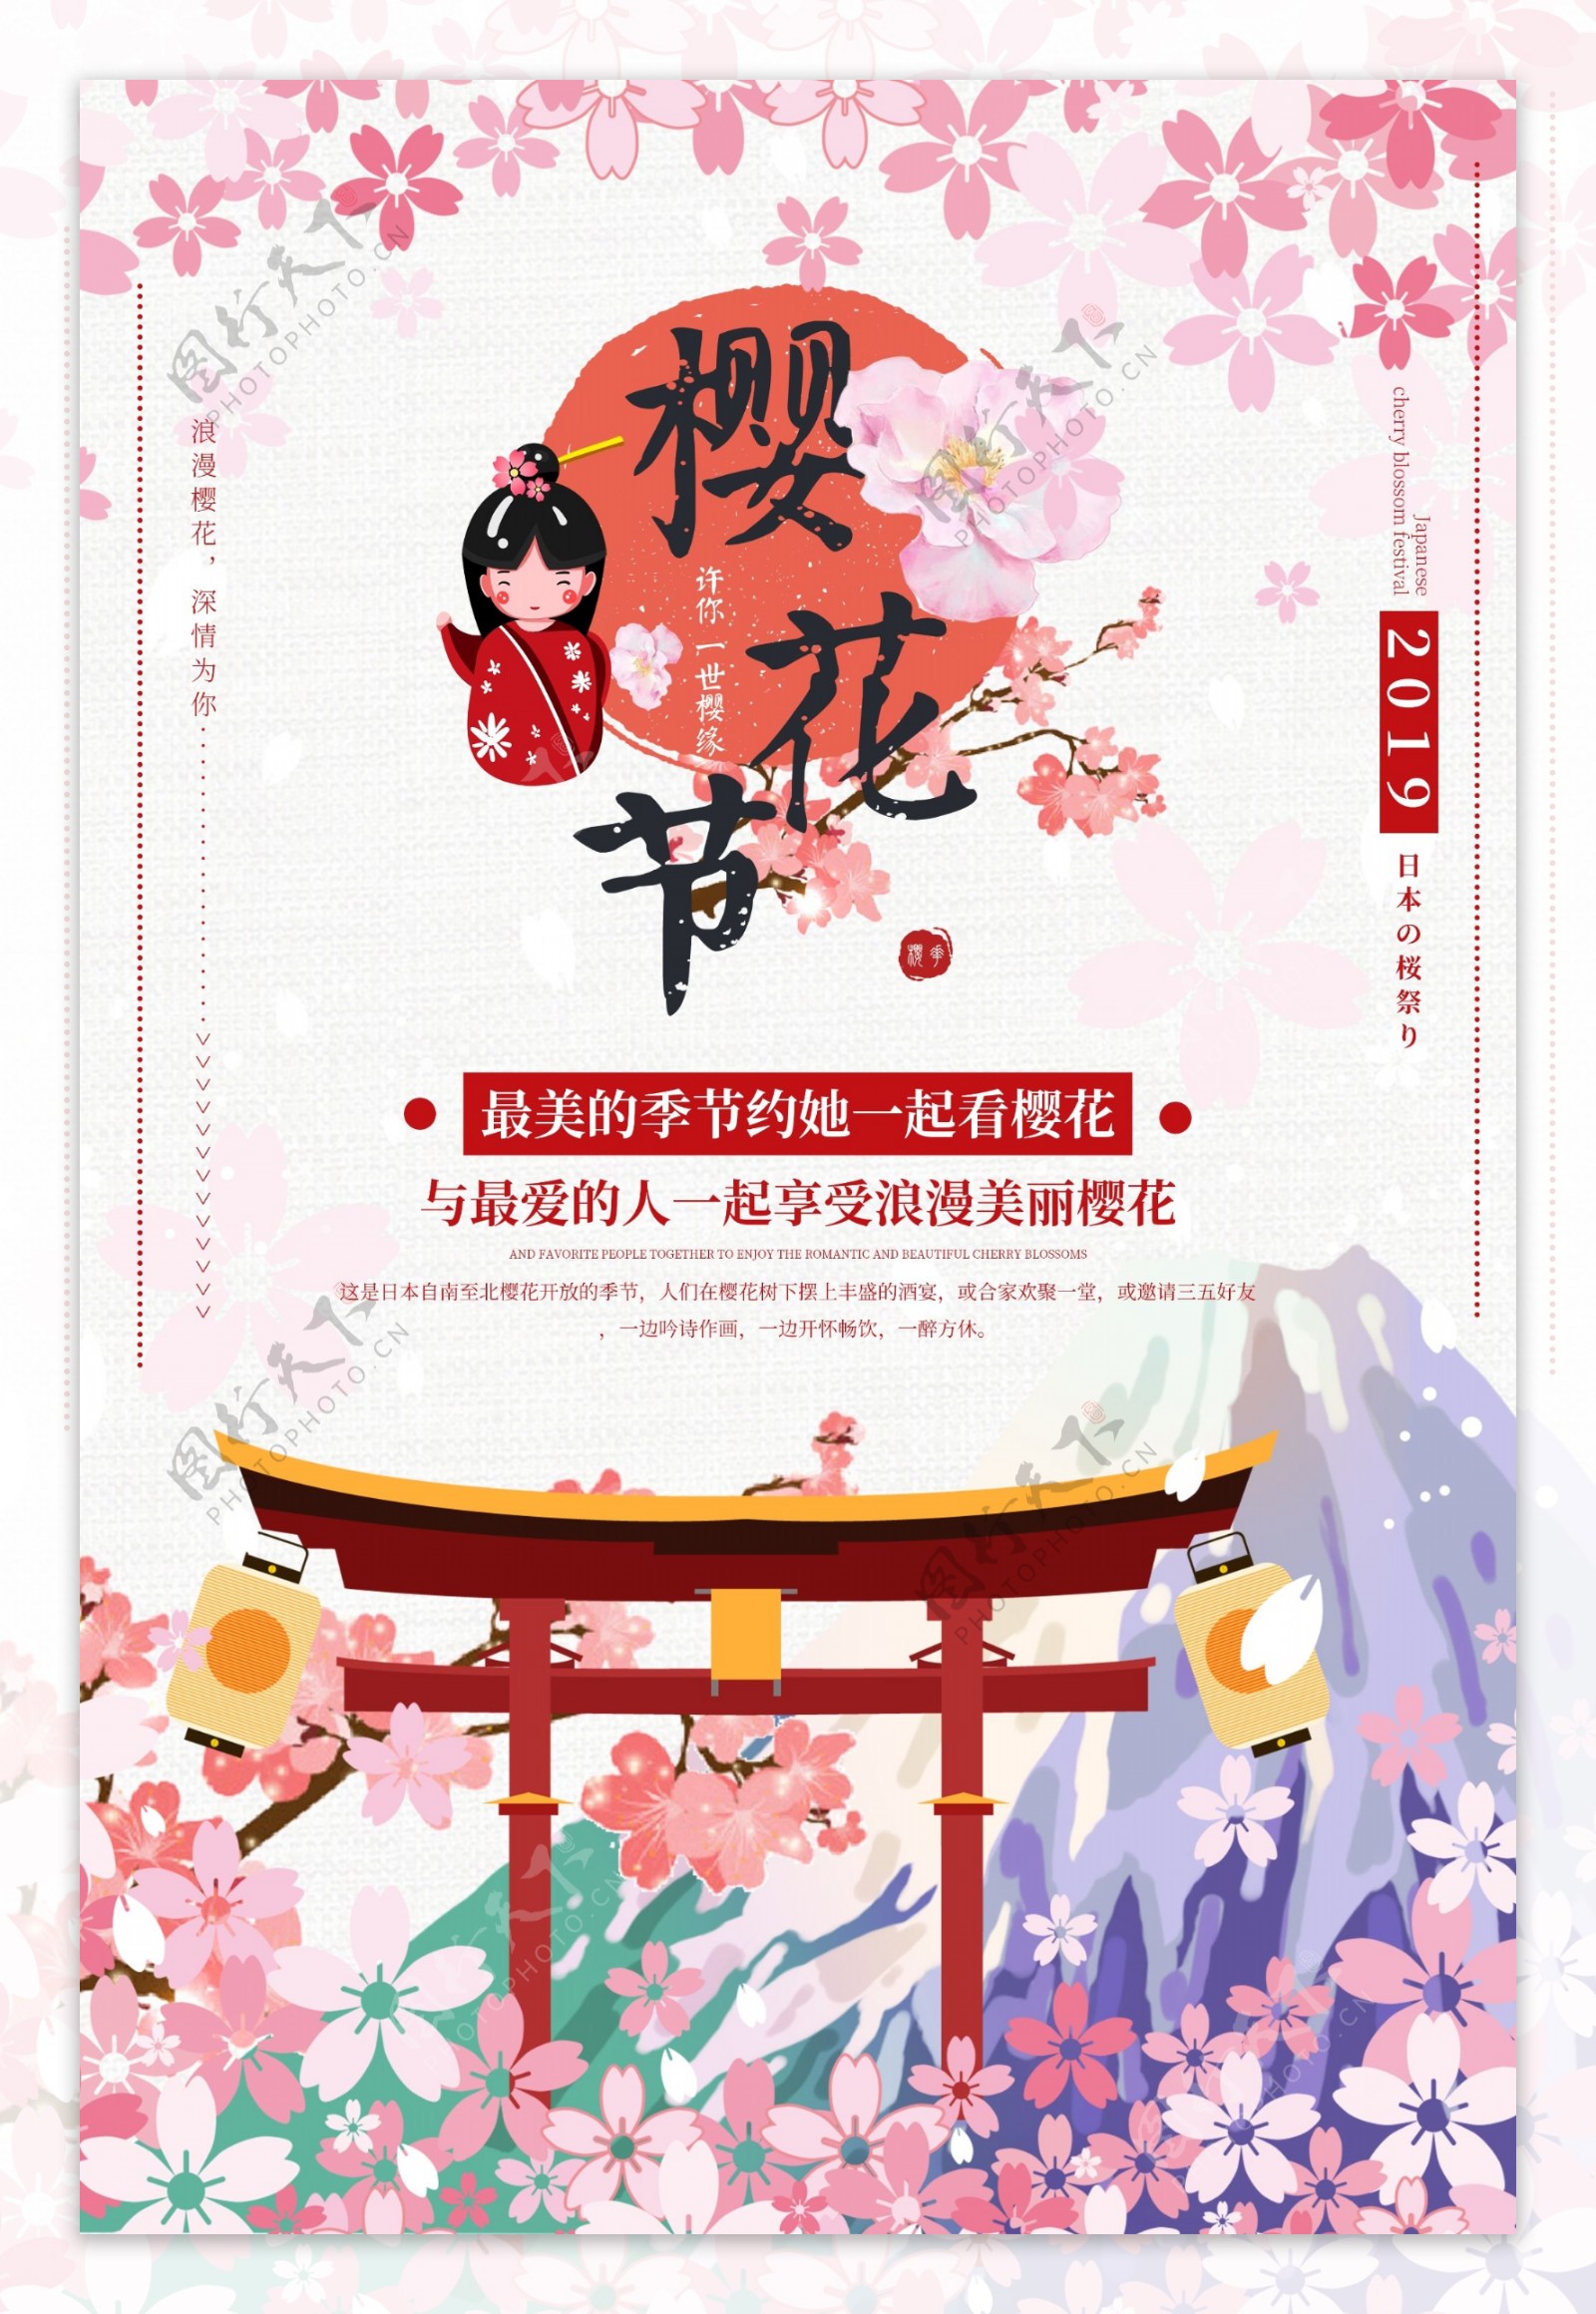 樱花节旅行海报